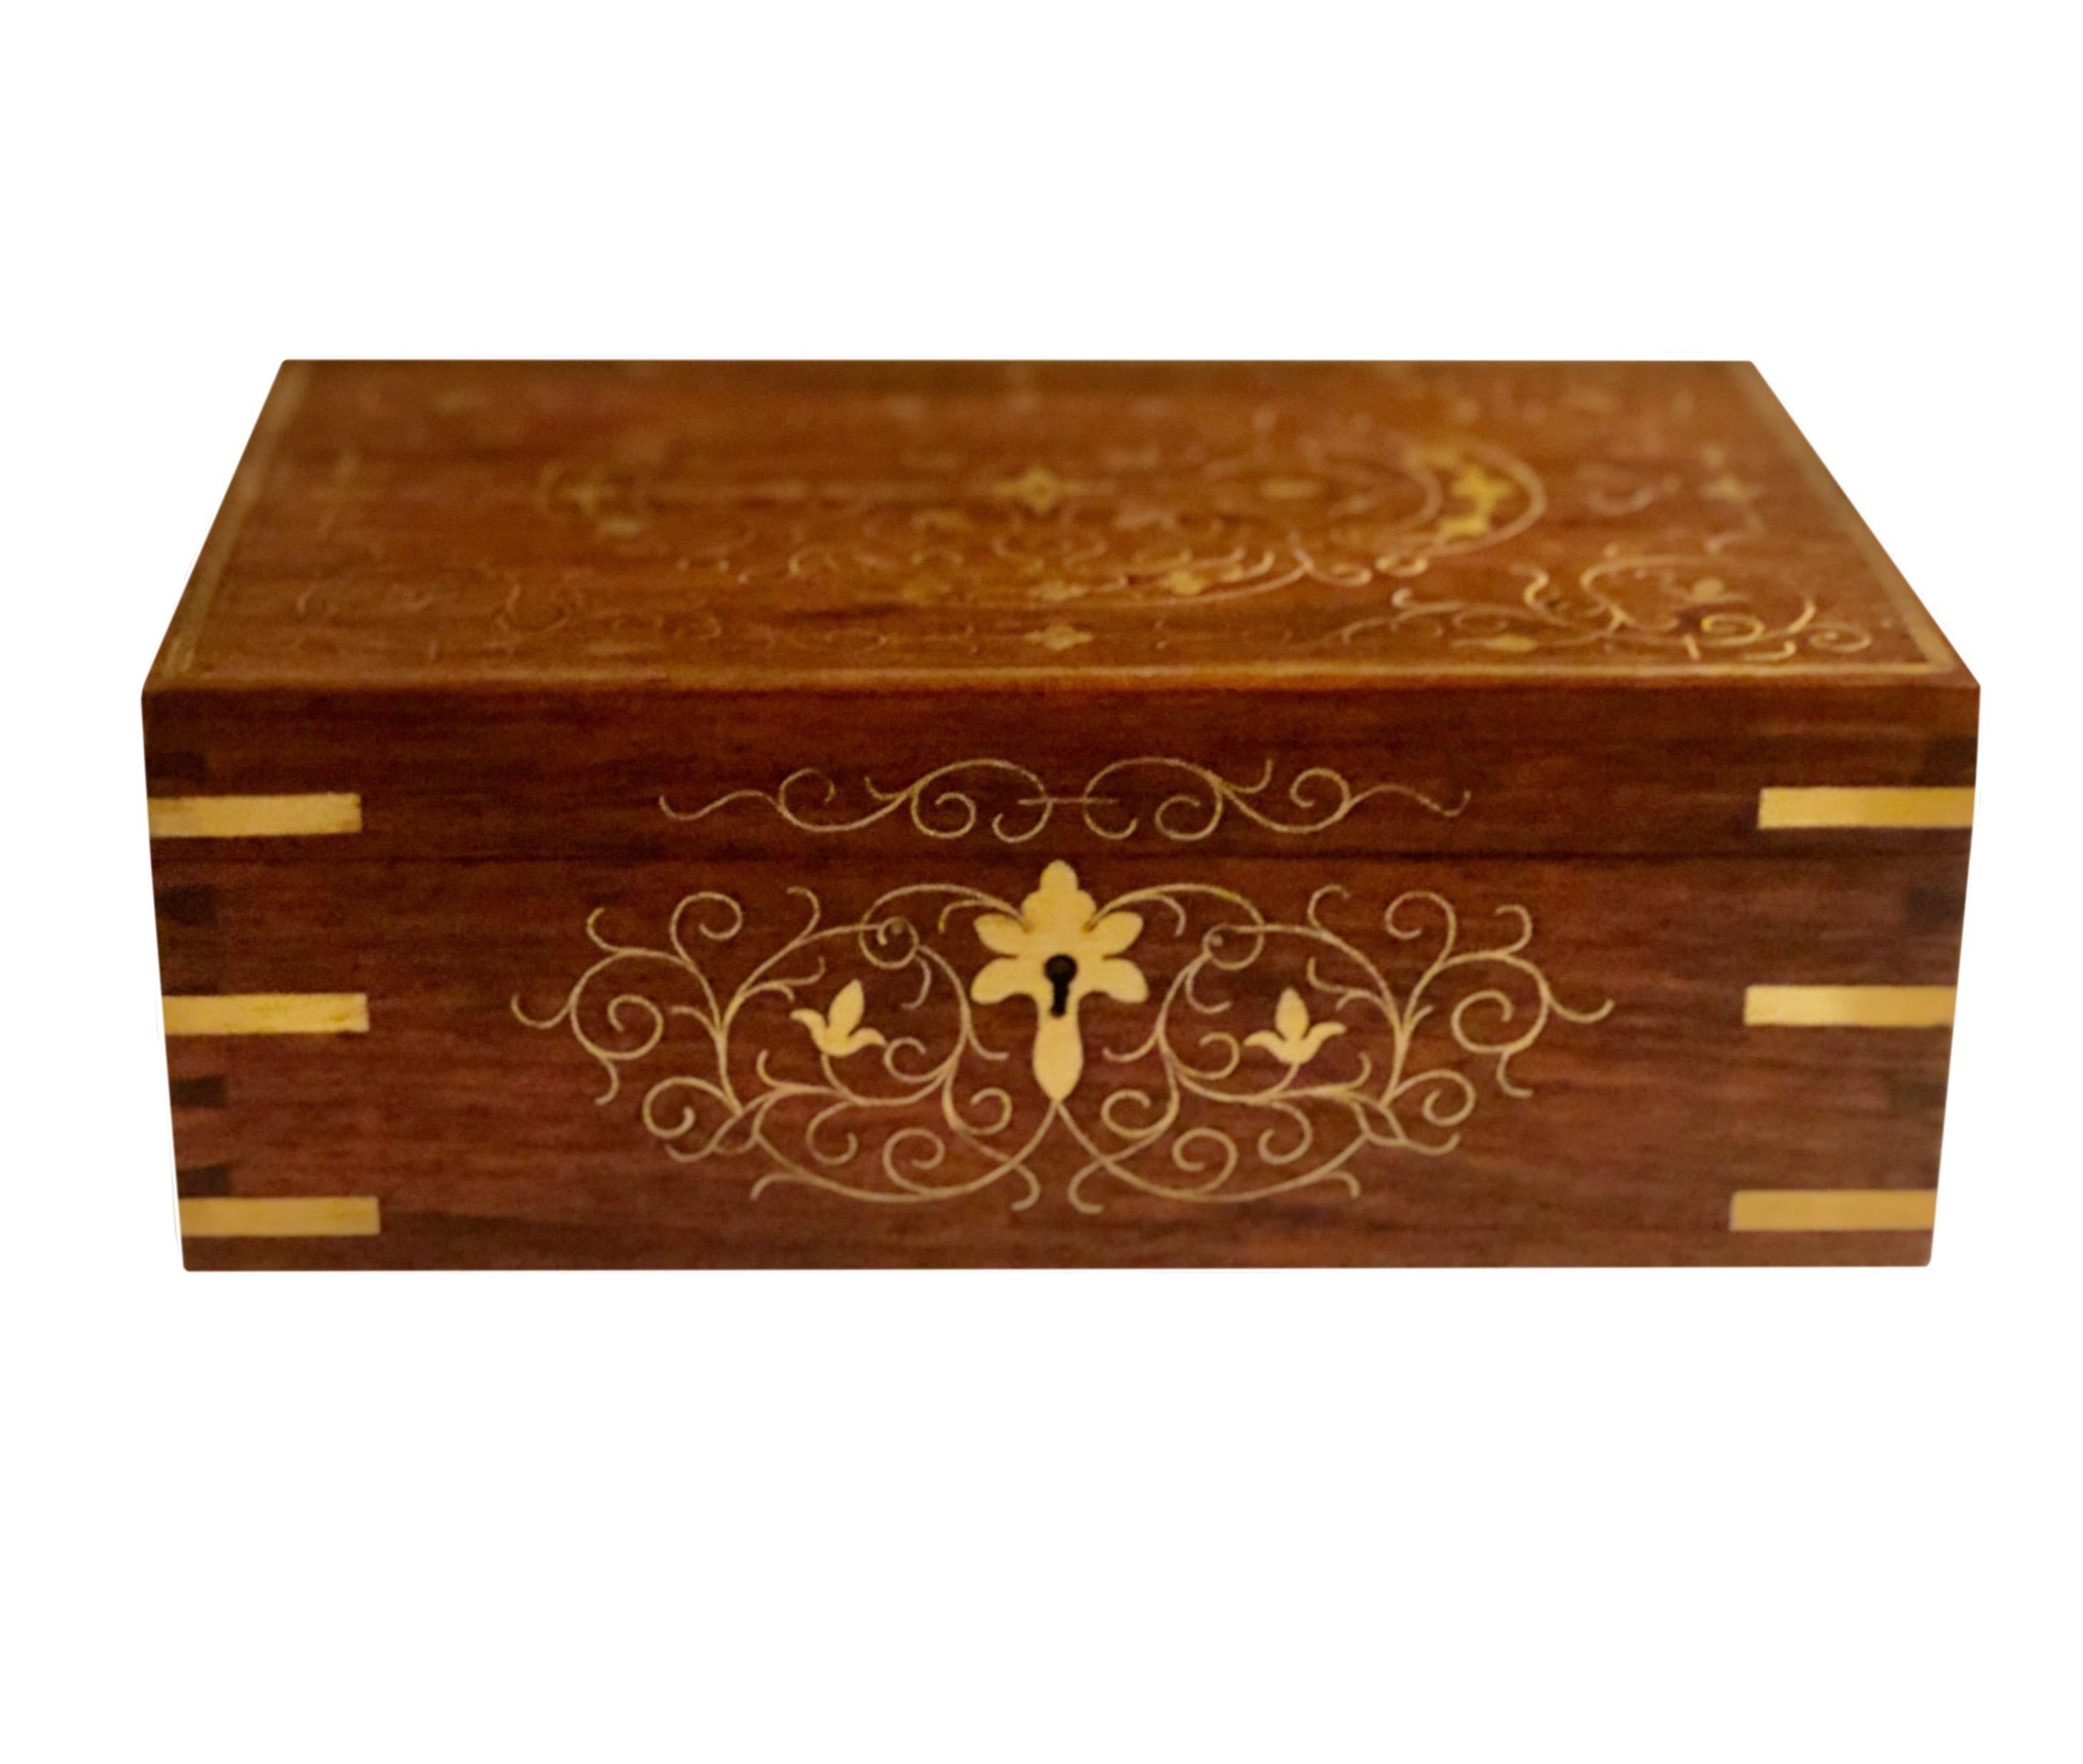 Boîte en bois de rose d'origine anglo-indienne vers la fin du XIXe siècle. Le motif doré de fleurs et de volutes sur le dessus se prolonge sur les quatre côtés, ce qui permet de l'exposer joliment sur un bureau ou une table. La boîte a deux niveaux